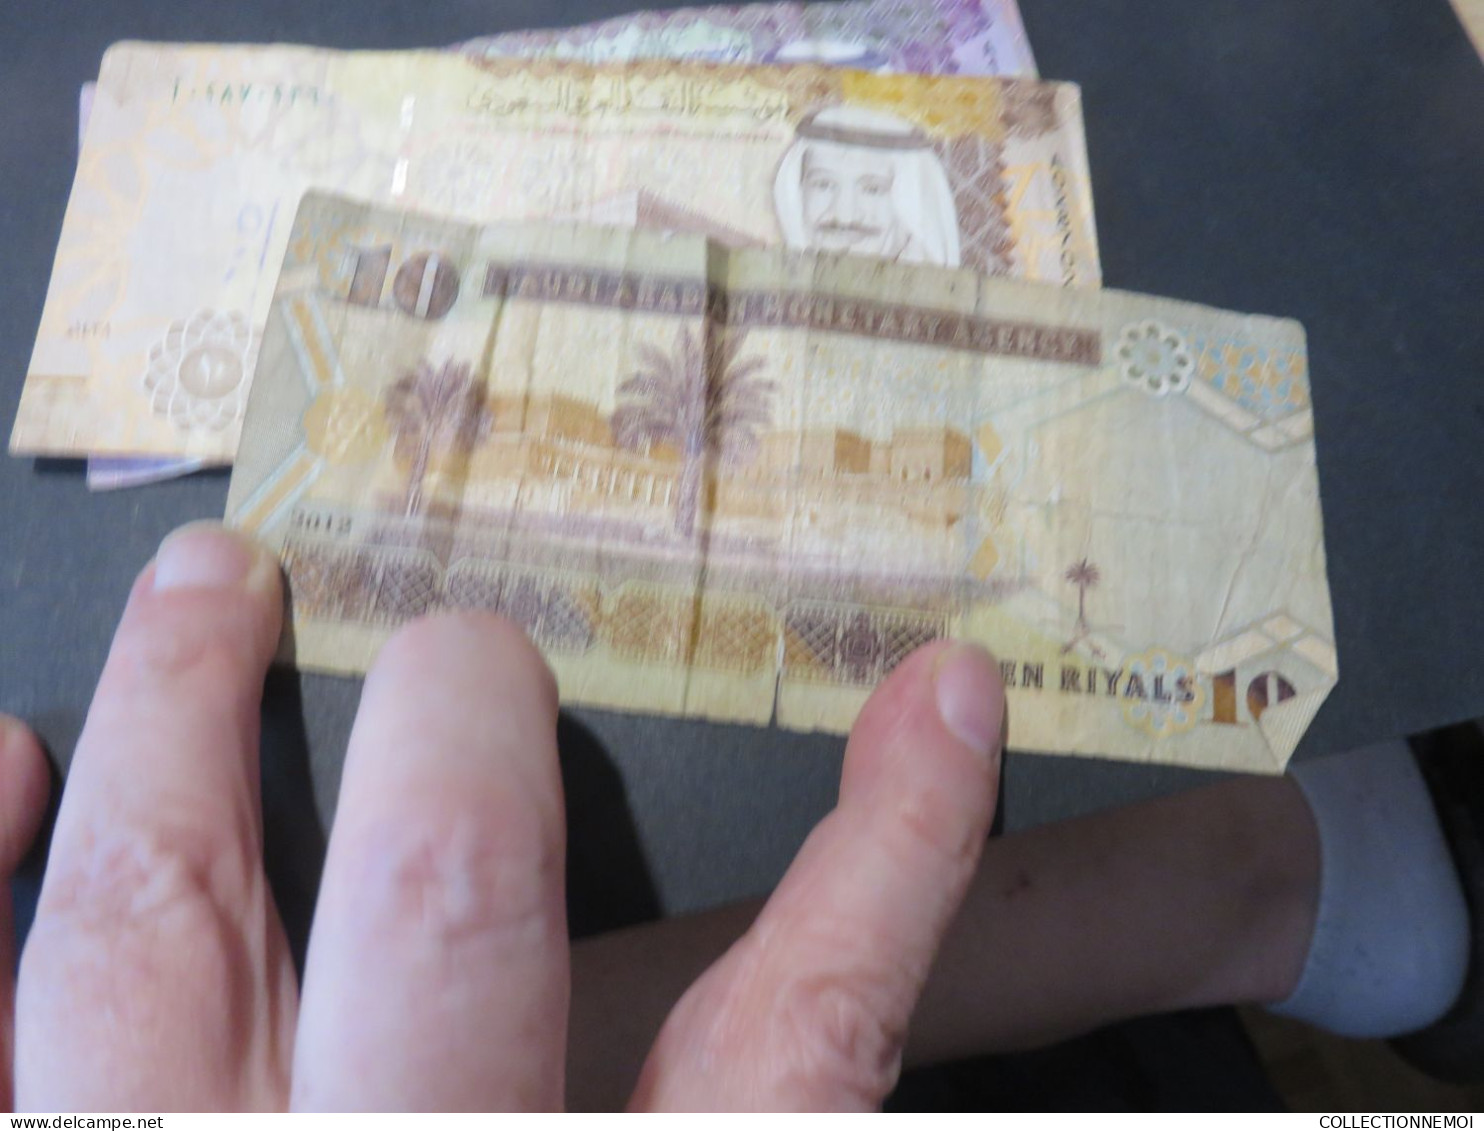 10 billets d arabie saoudite , vendue comme ils sont